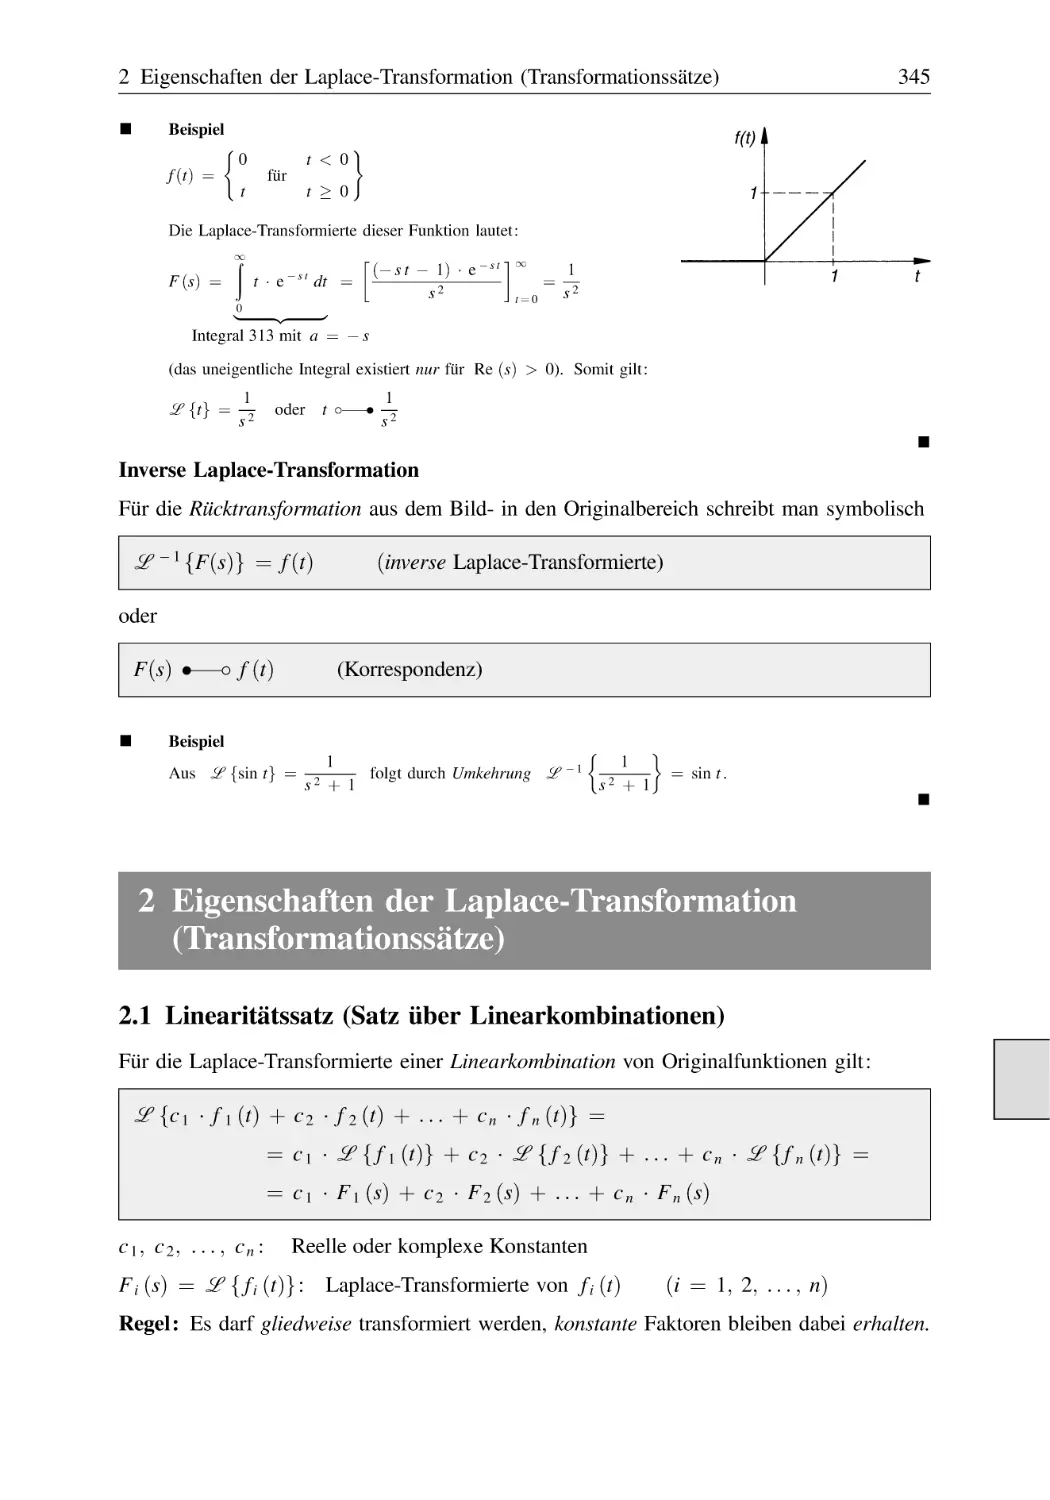 2 Eigenschaften der Laplace-Transformation (Transformationssätze)
2.1 Linearitätssatz (Satz über Linearkombinationen)